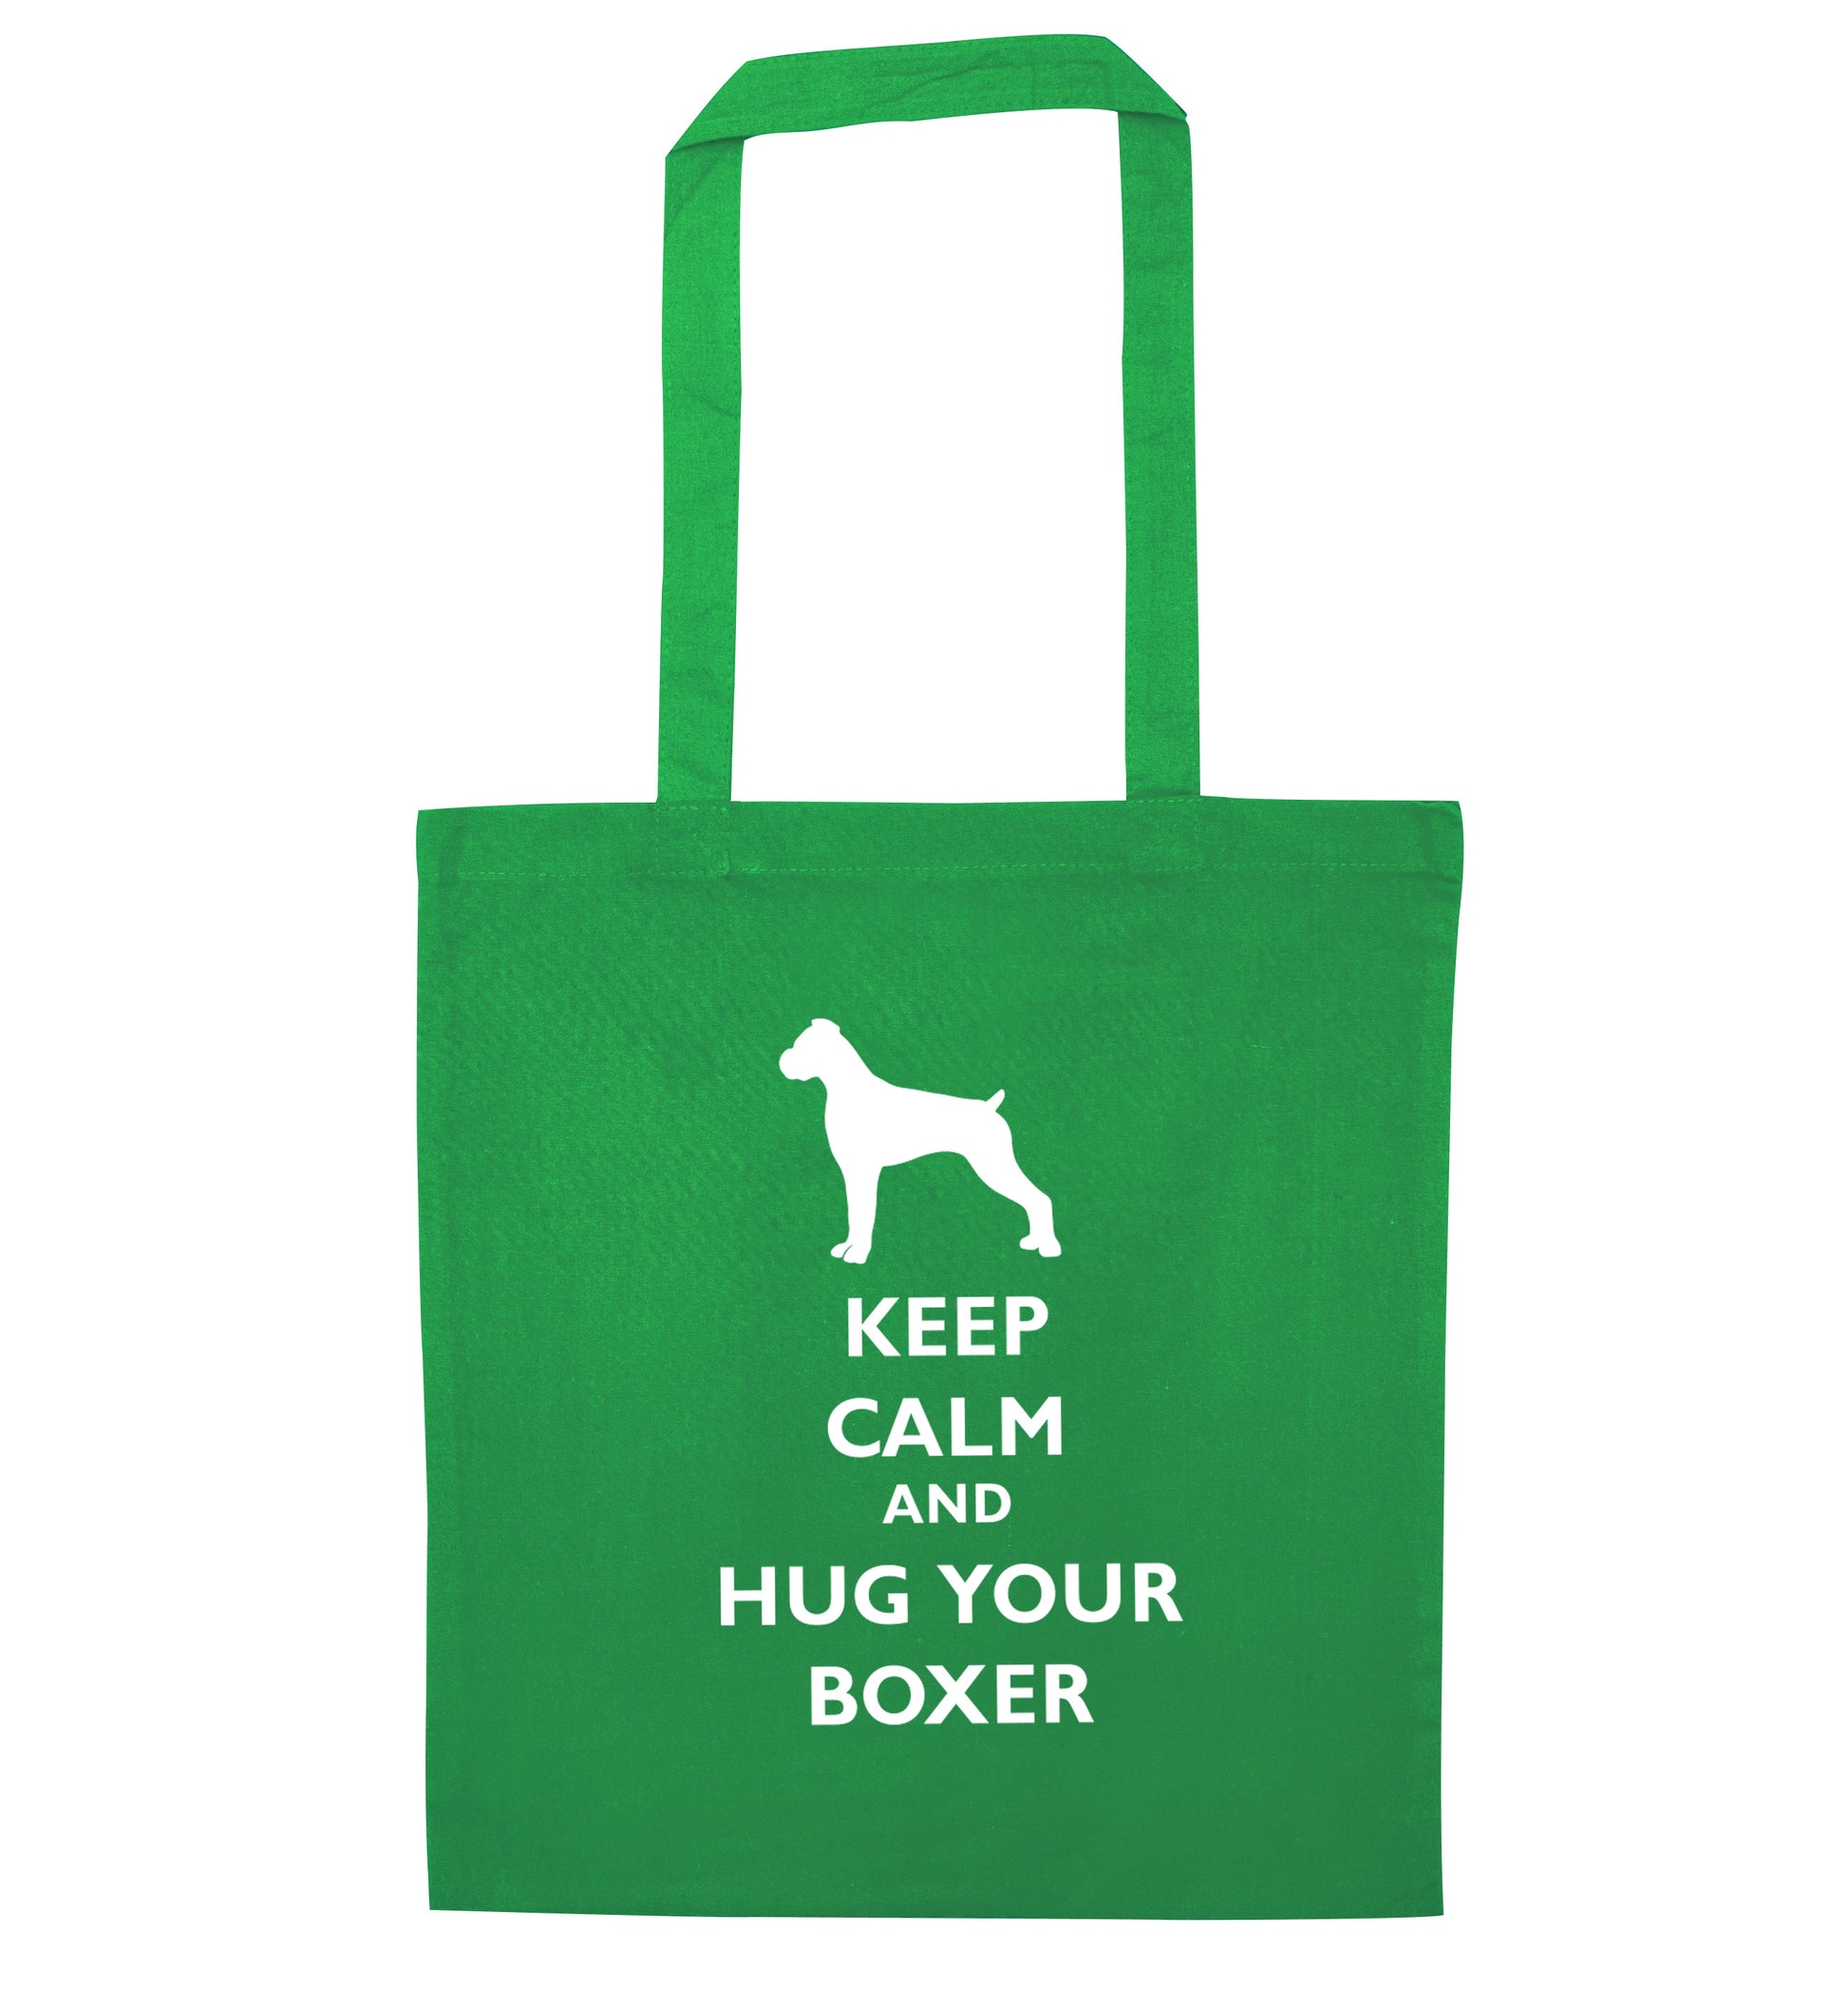 Keep calm and hug your boxer green tote bag